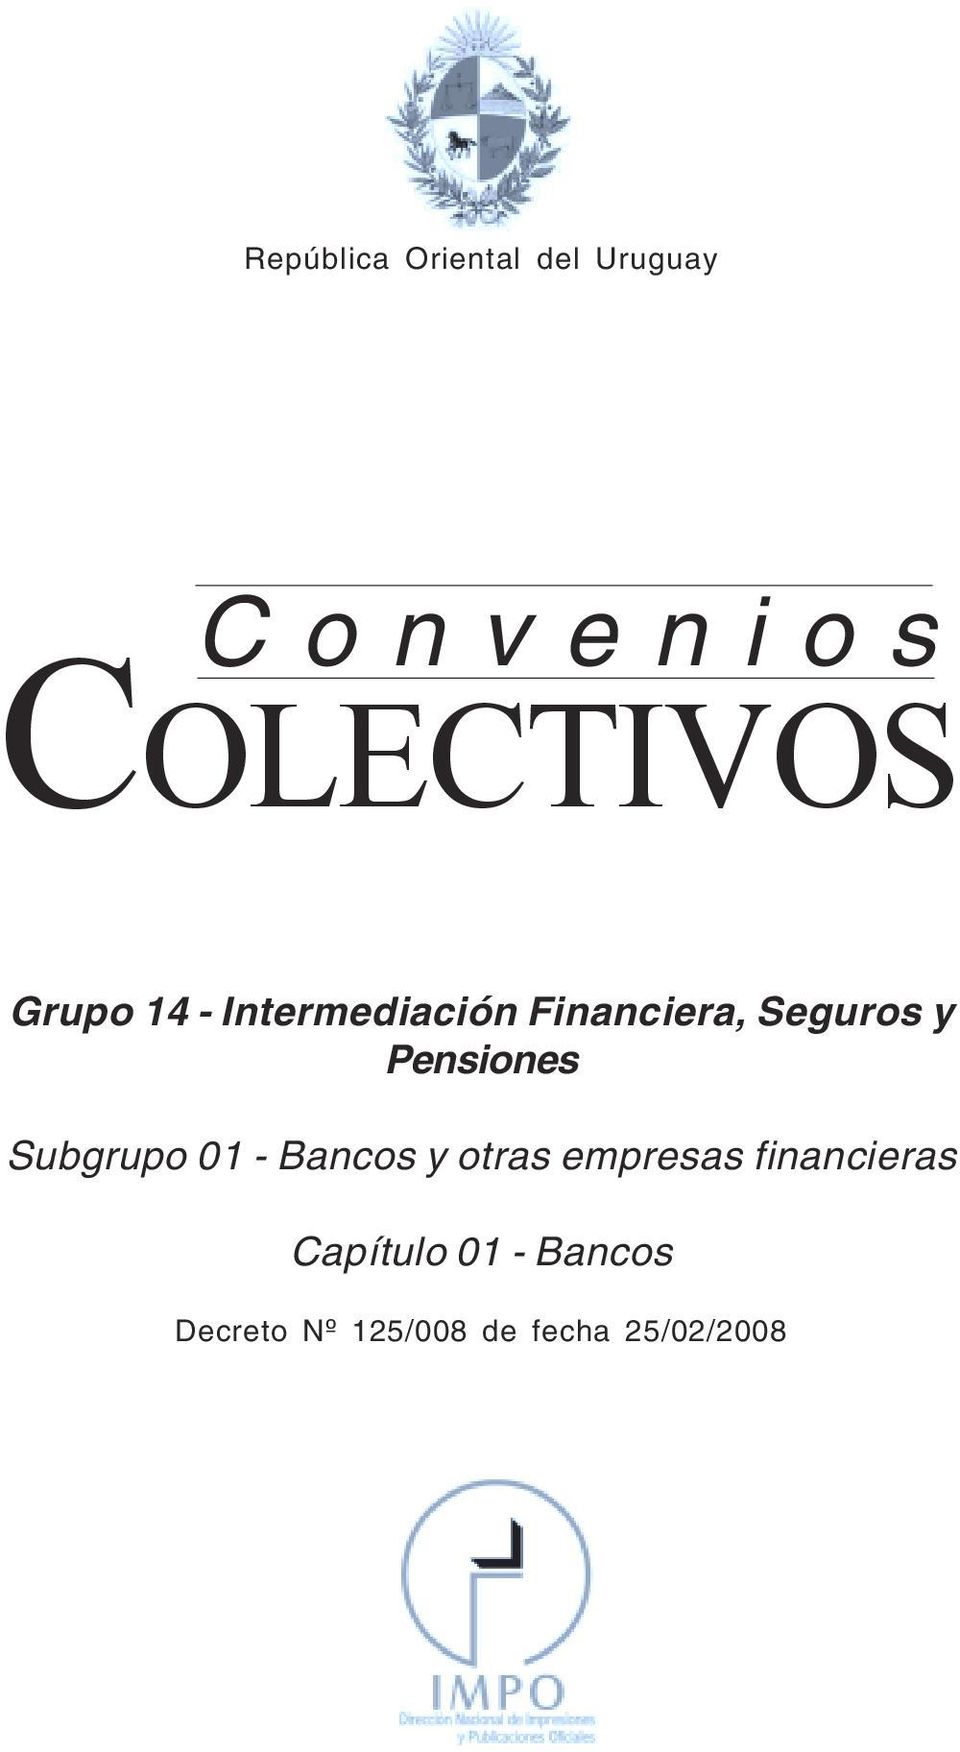 Financiera, Seguros y Pensiones Subgrupo 01 - Bancos y otras empresas